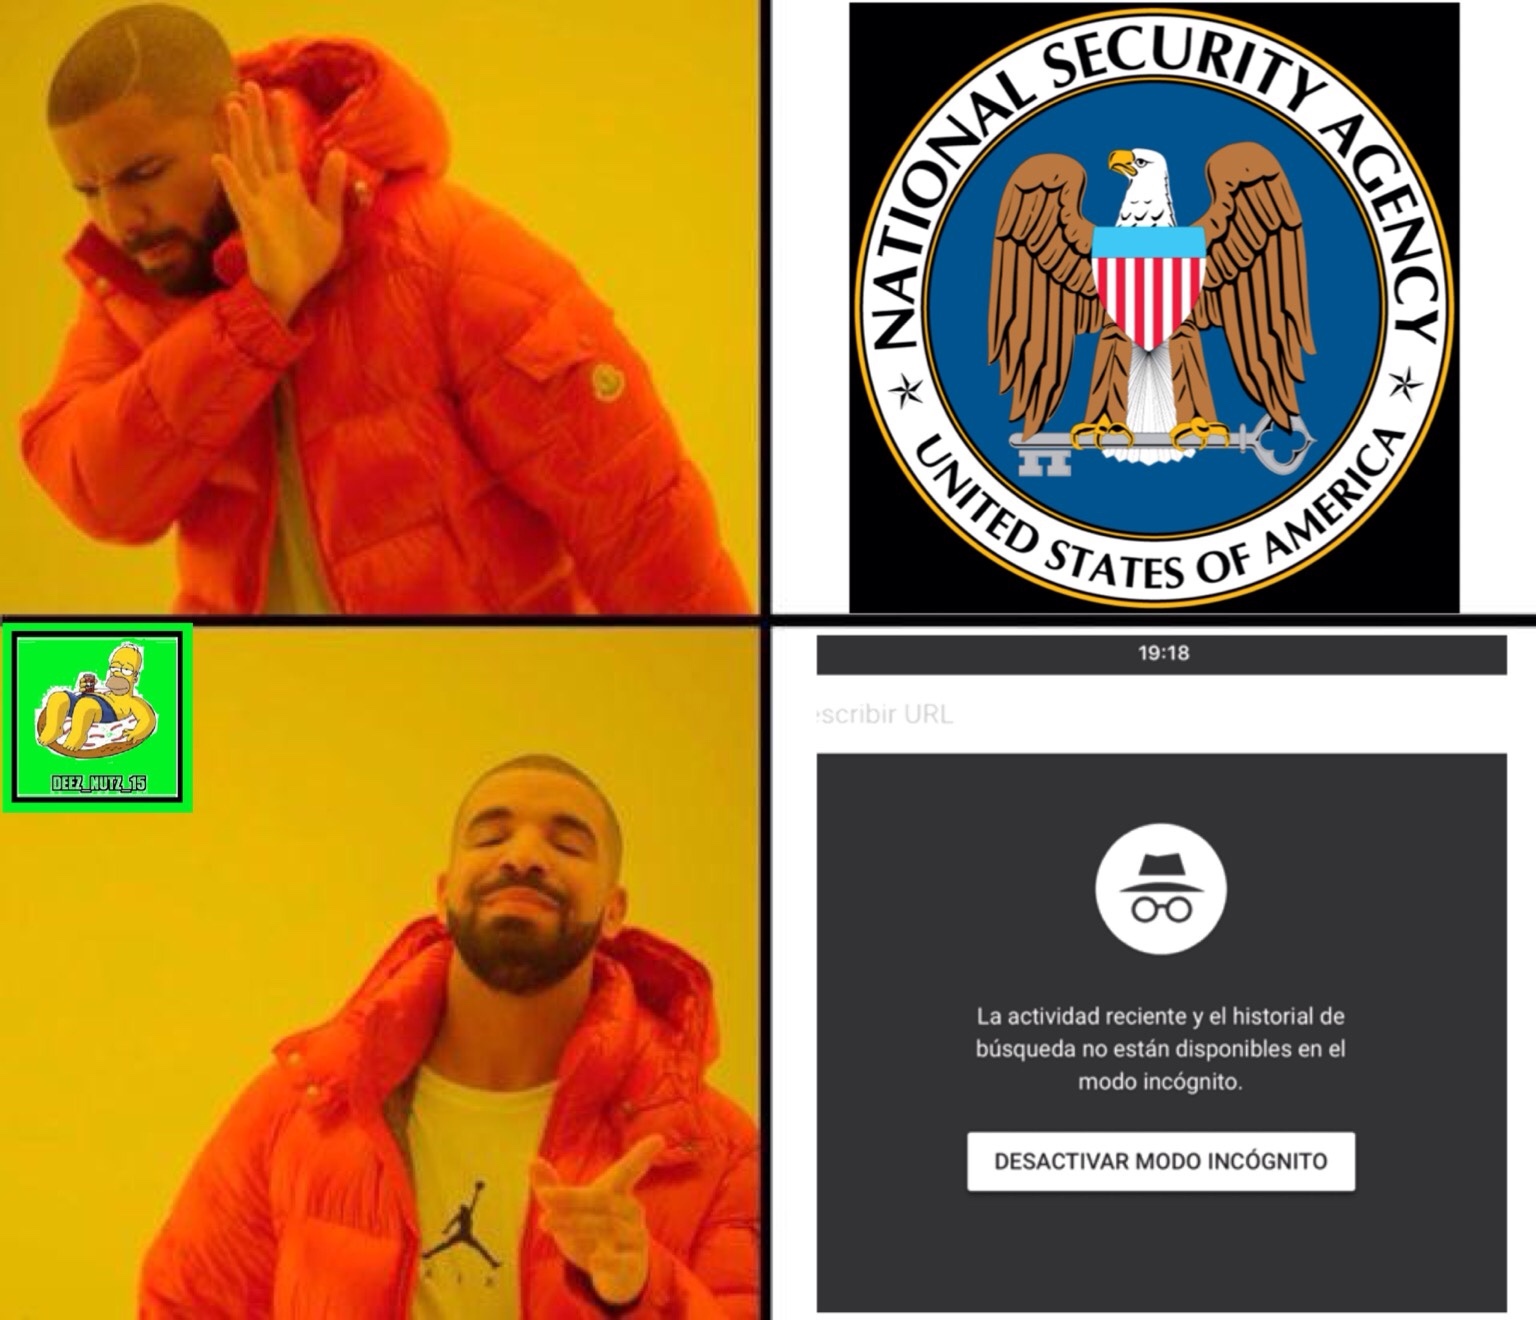 NSA o búsqueda en incógnito - meme